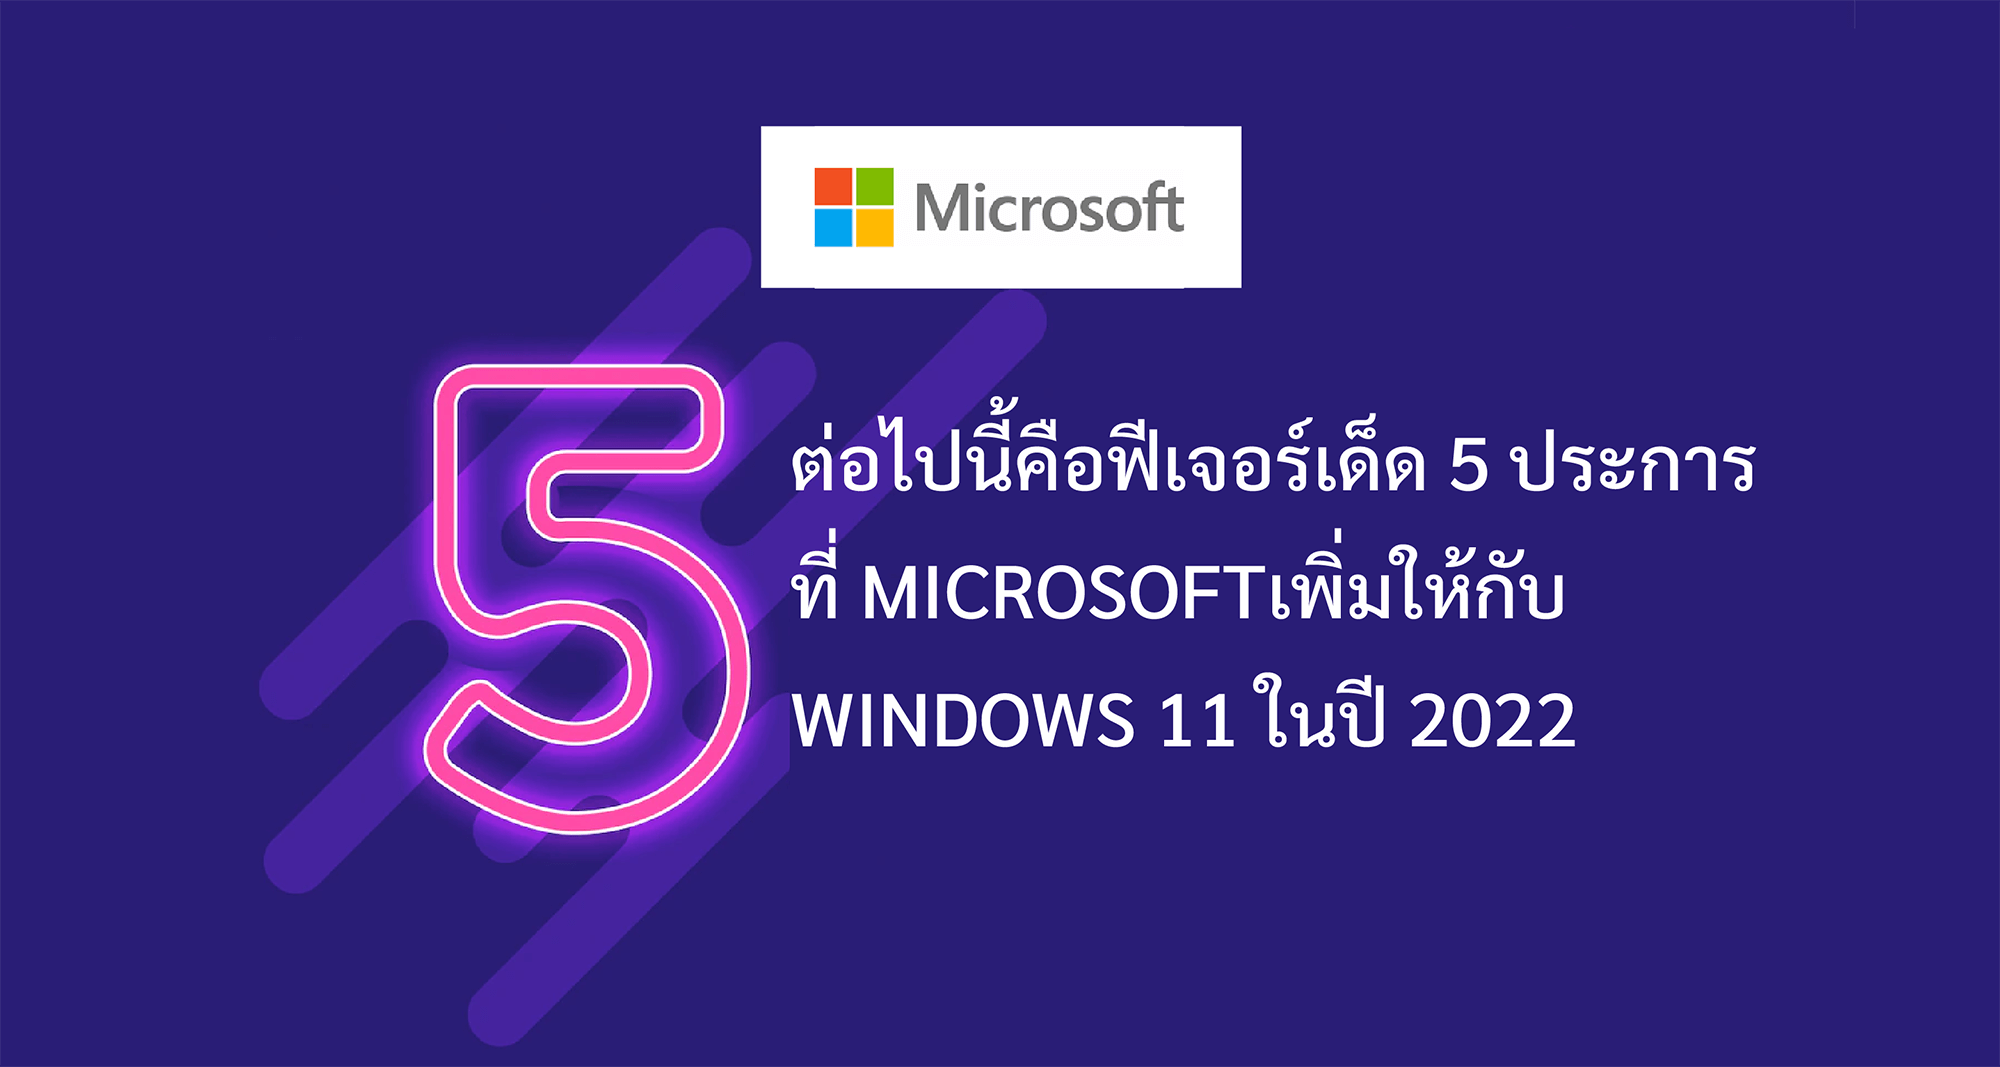 นี่คือฟีเจอร์เด็ด 5 ประการที่ Microsoft เพิ่มให้กับ Windows 11 ในปี 2022